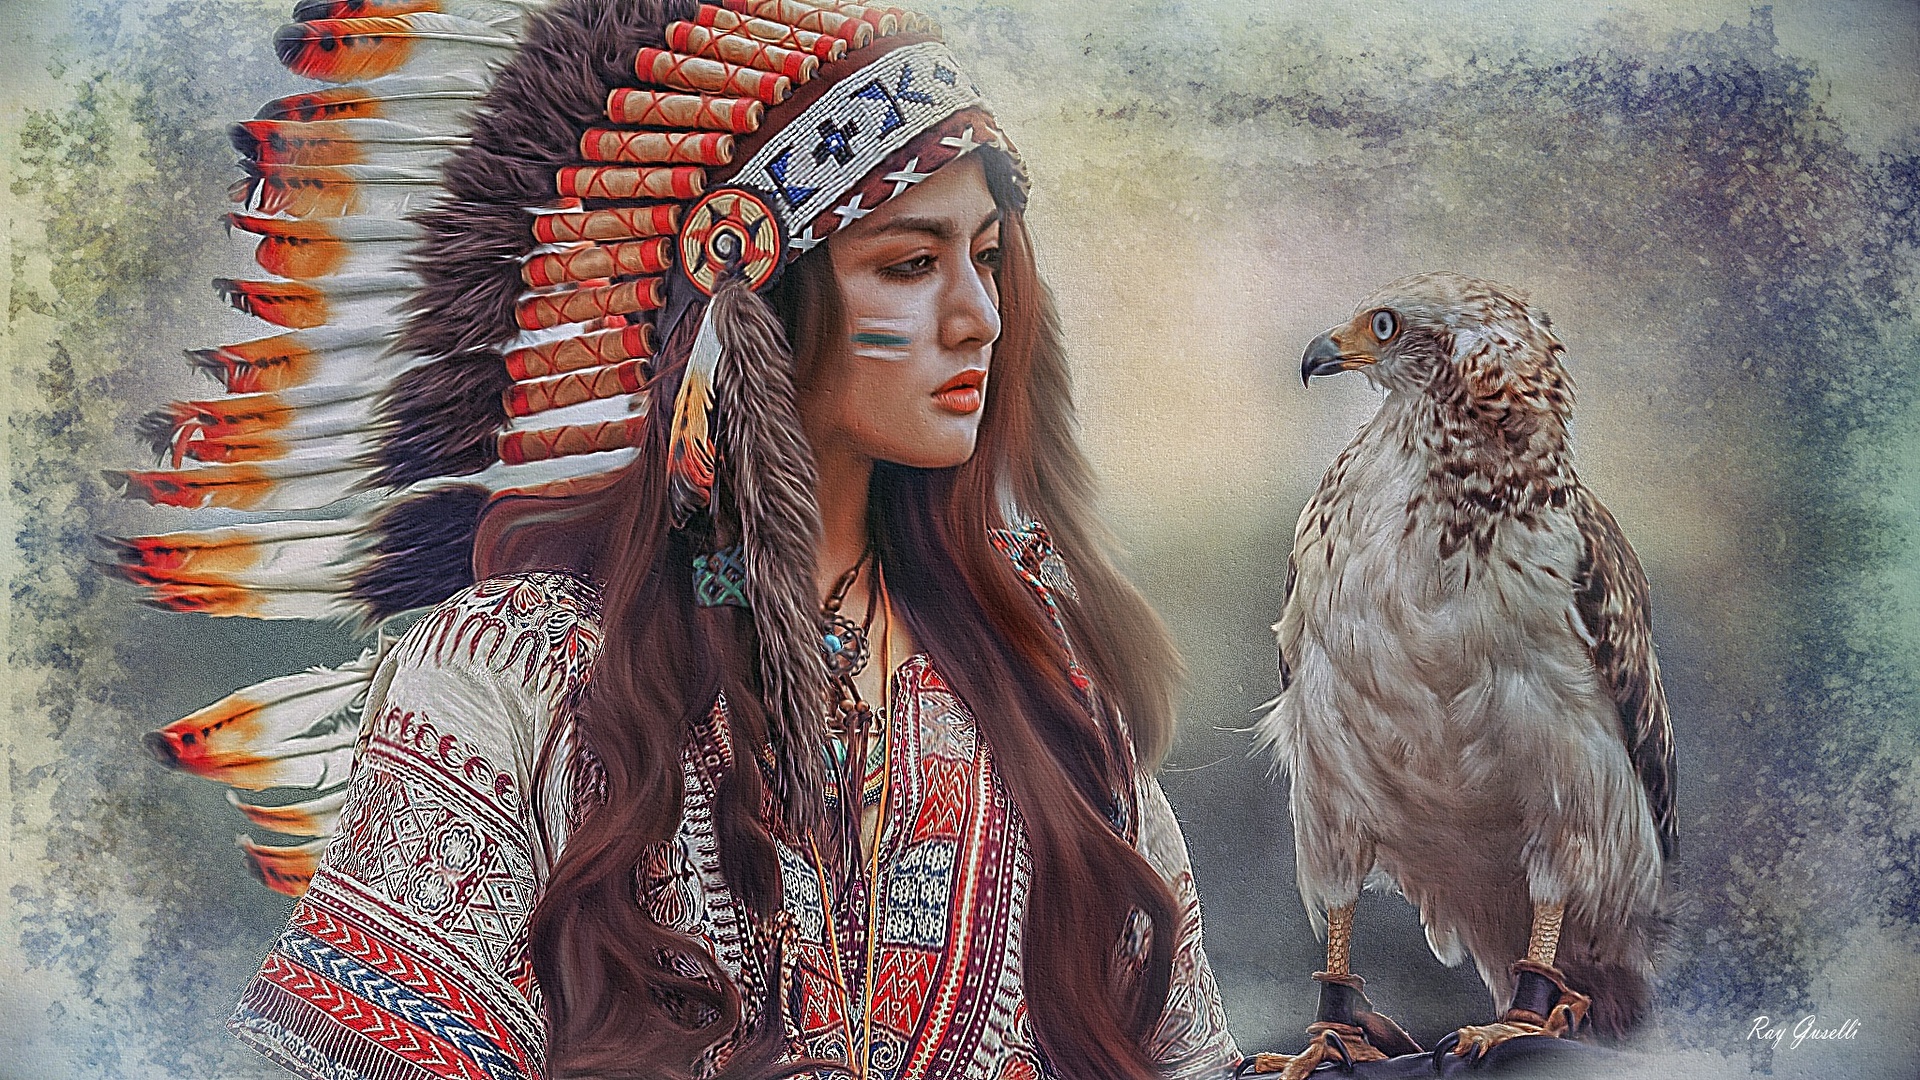 Spiksplinternieuw Foto Vogels Indianen Mooi Indiase hoofdtooi Jonge vrouwen 1920x1080 JP-75